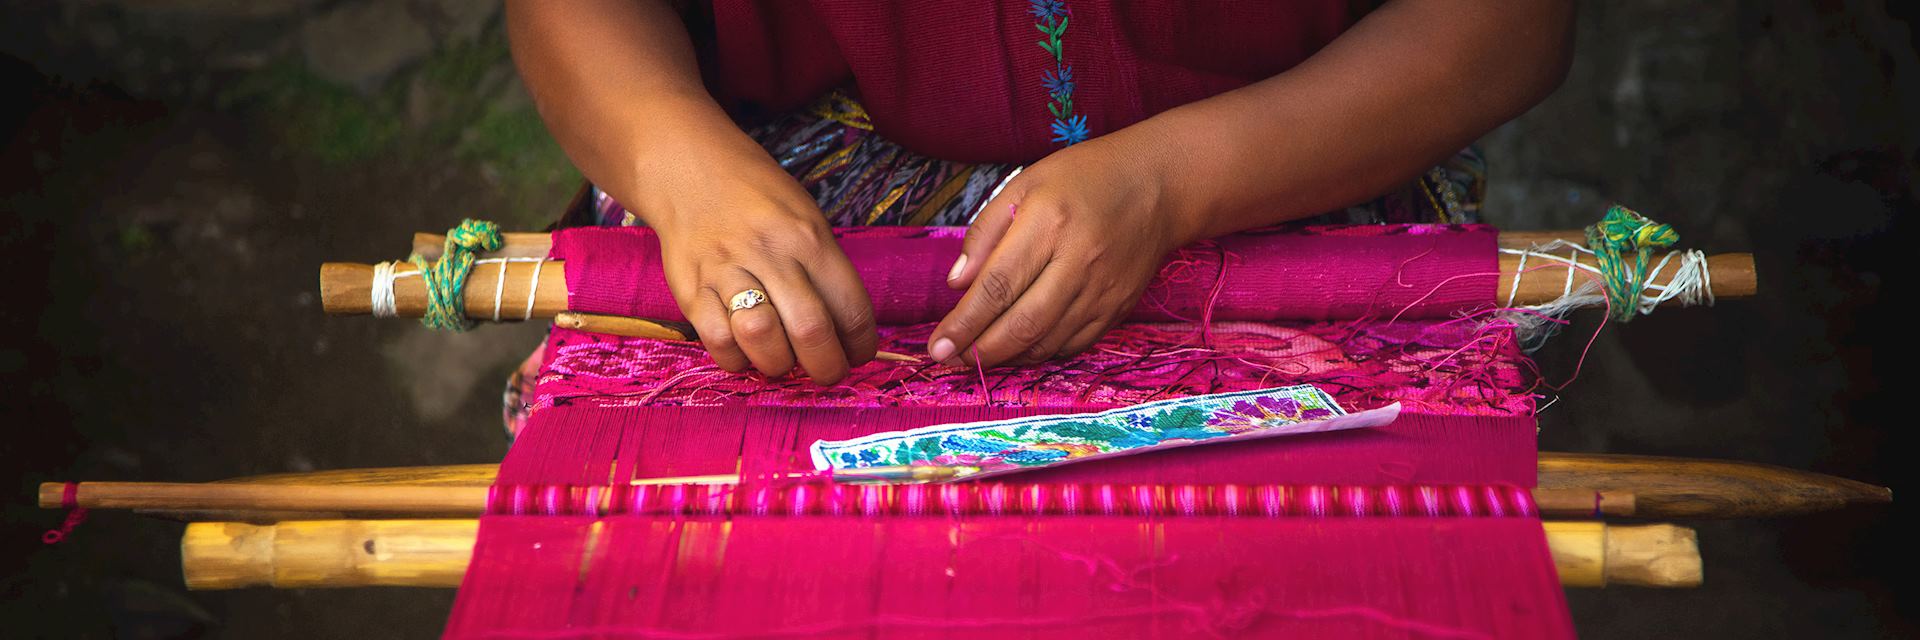 Woman weaving on a loom in Guatemala